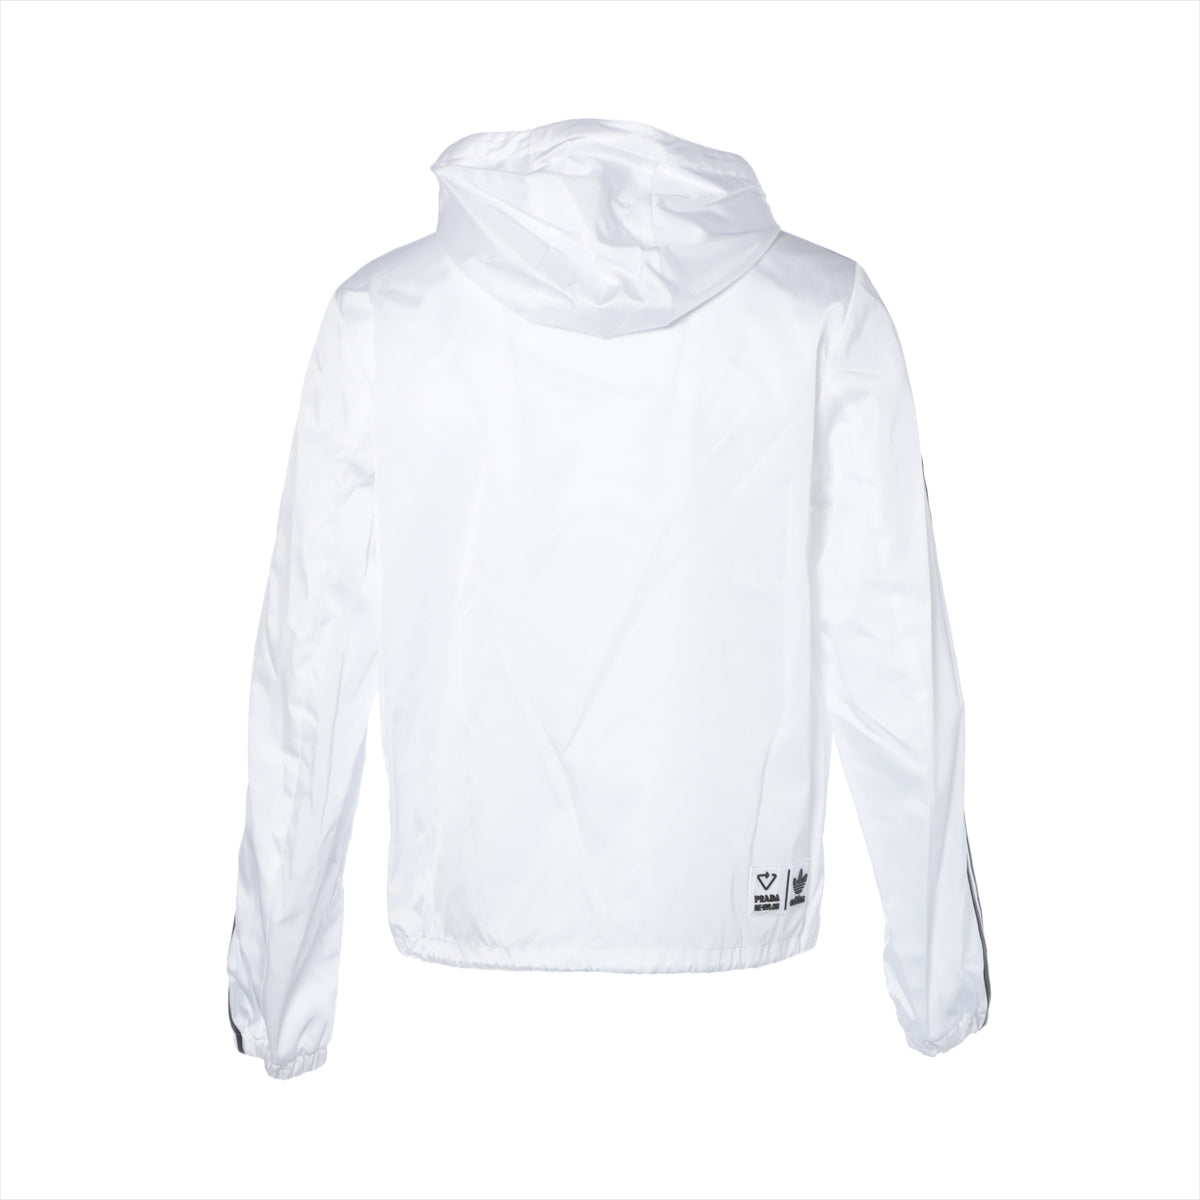 Prada x Adidas Re Nylon Re Nylon 21AW Nylon track jacket 46 Men's White  SGB964